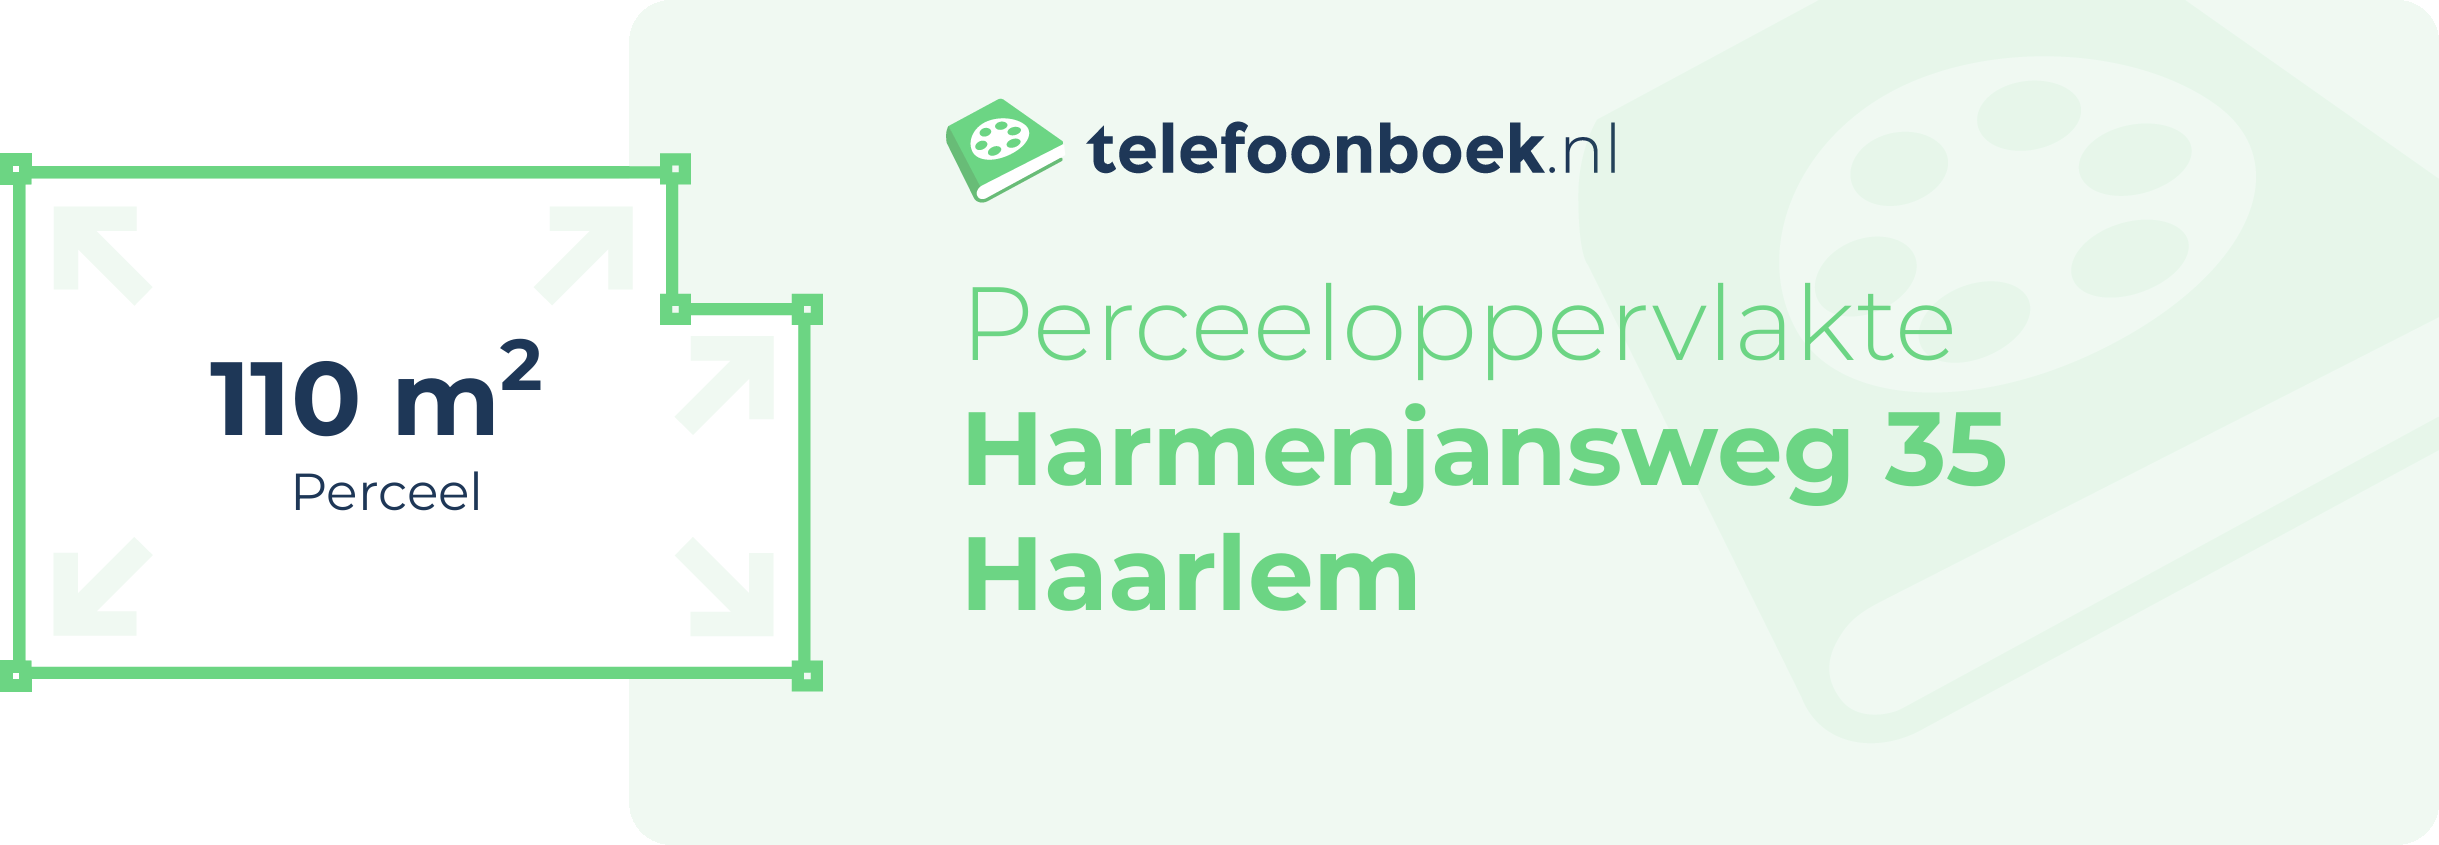 Perceeloppervlakte Harmenjansweg 35 Haarlem